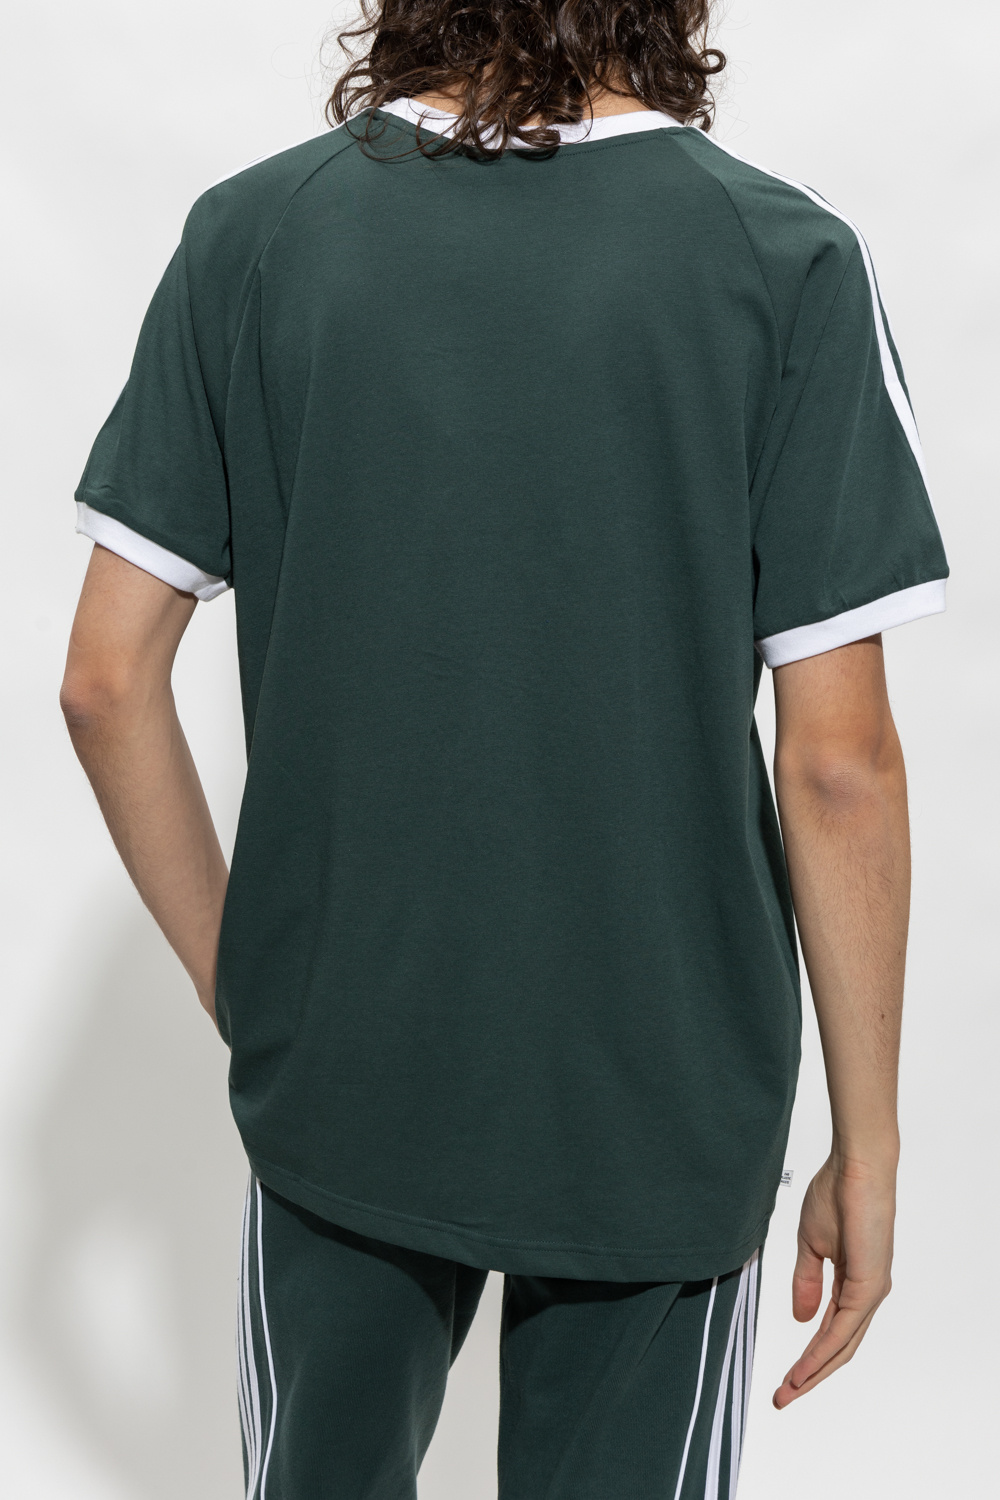 shirt with logo med løbeshorts IetpShops Originals underlag ADIDAS - adidas - Green GB - T Blå